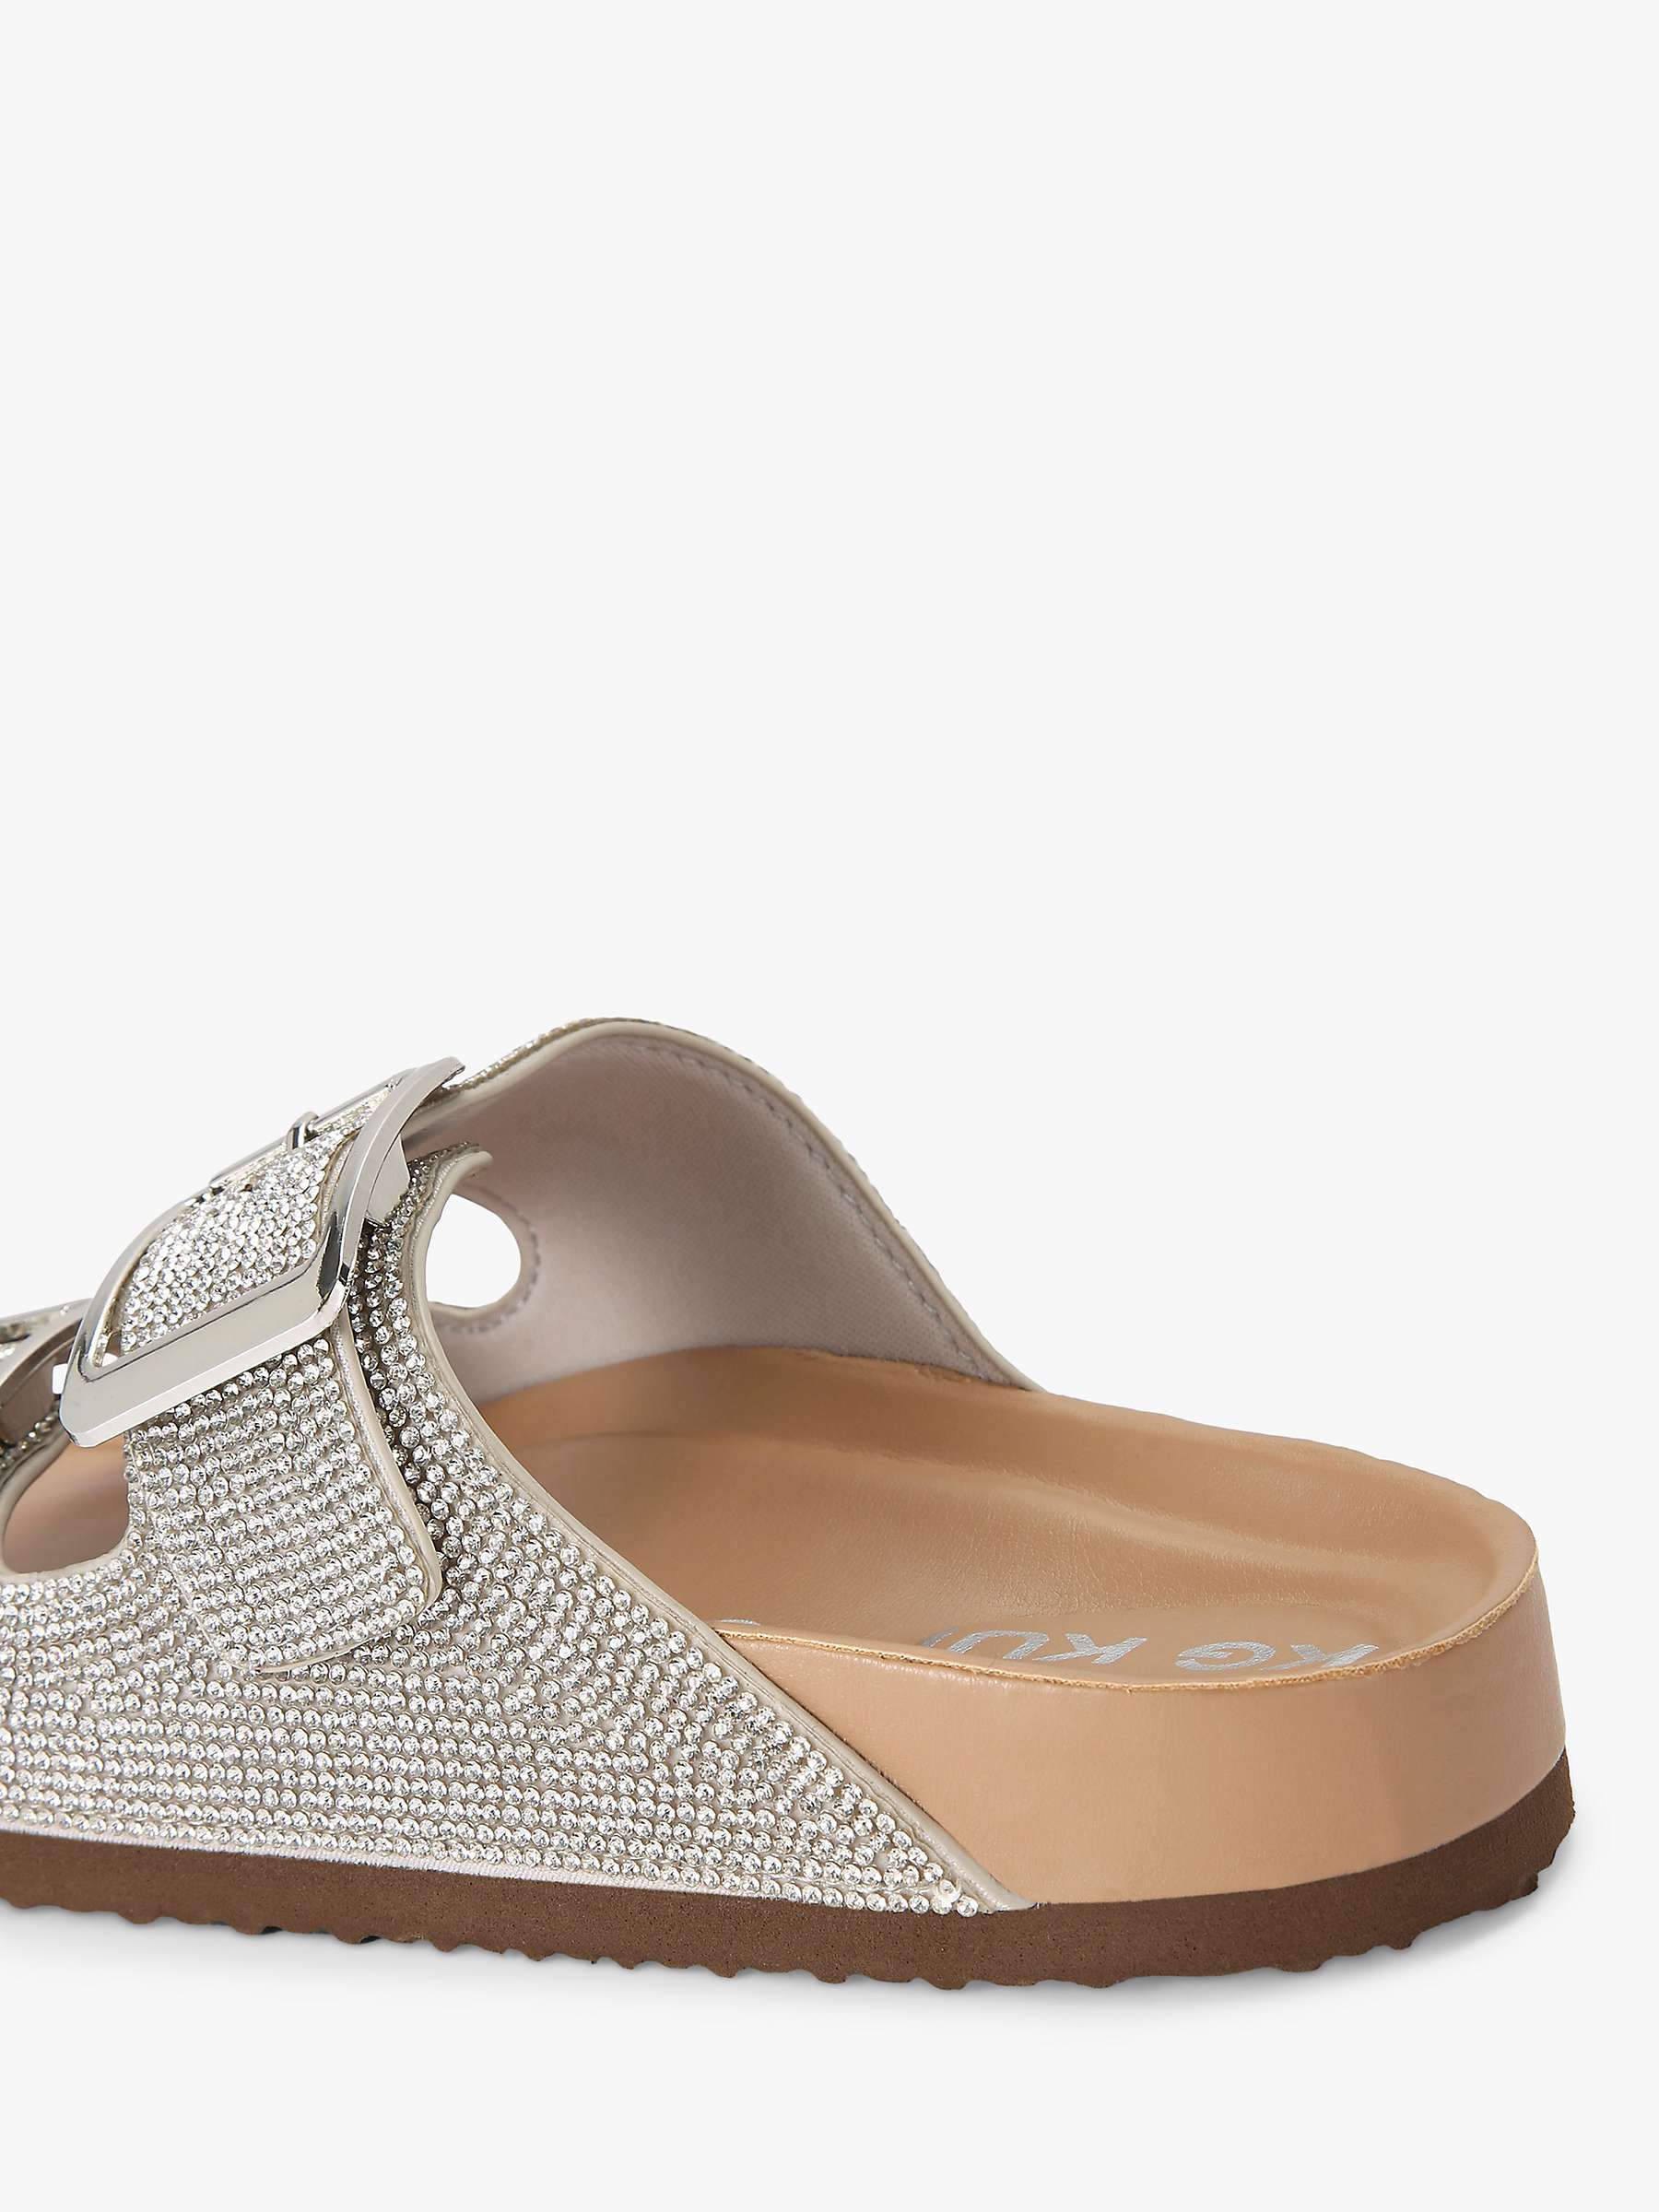 Buy KG Kurt Geiger Ramona Embellished Footbed Sandals, Silver Online at johnlewis.com